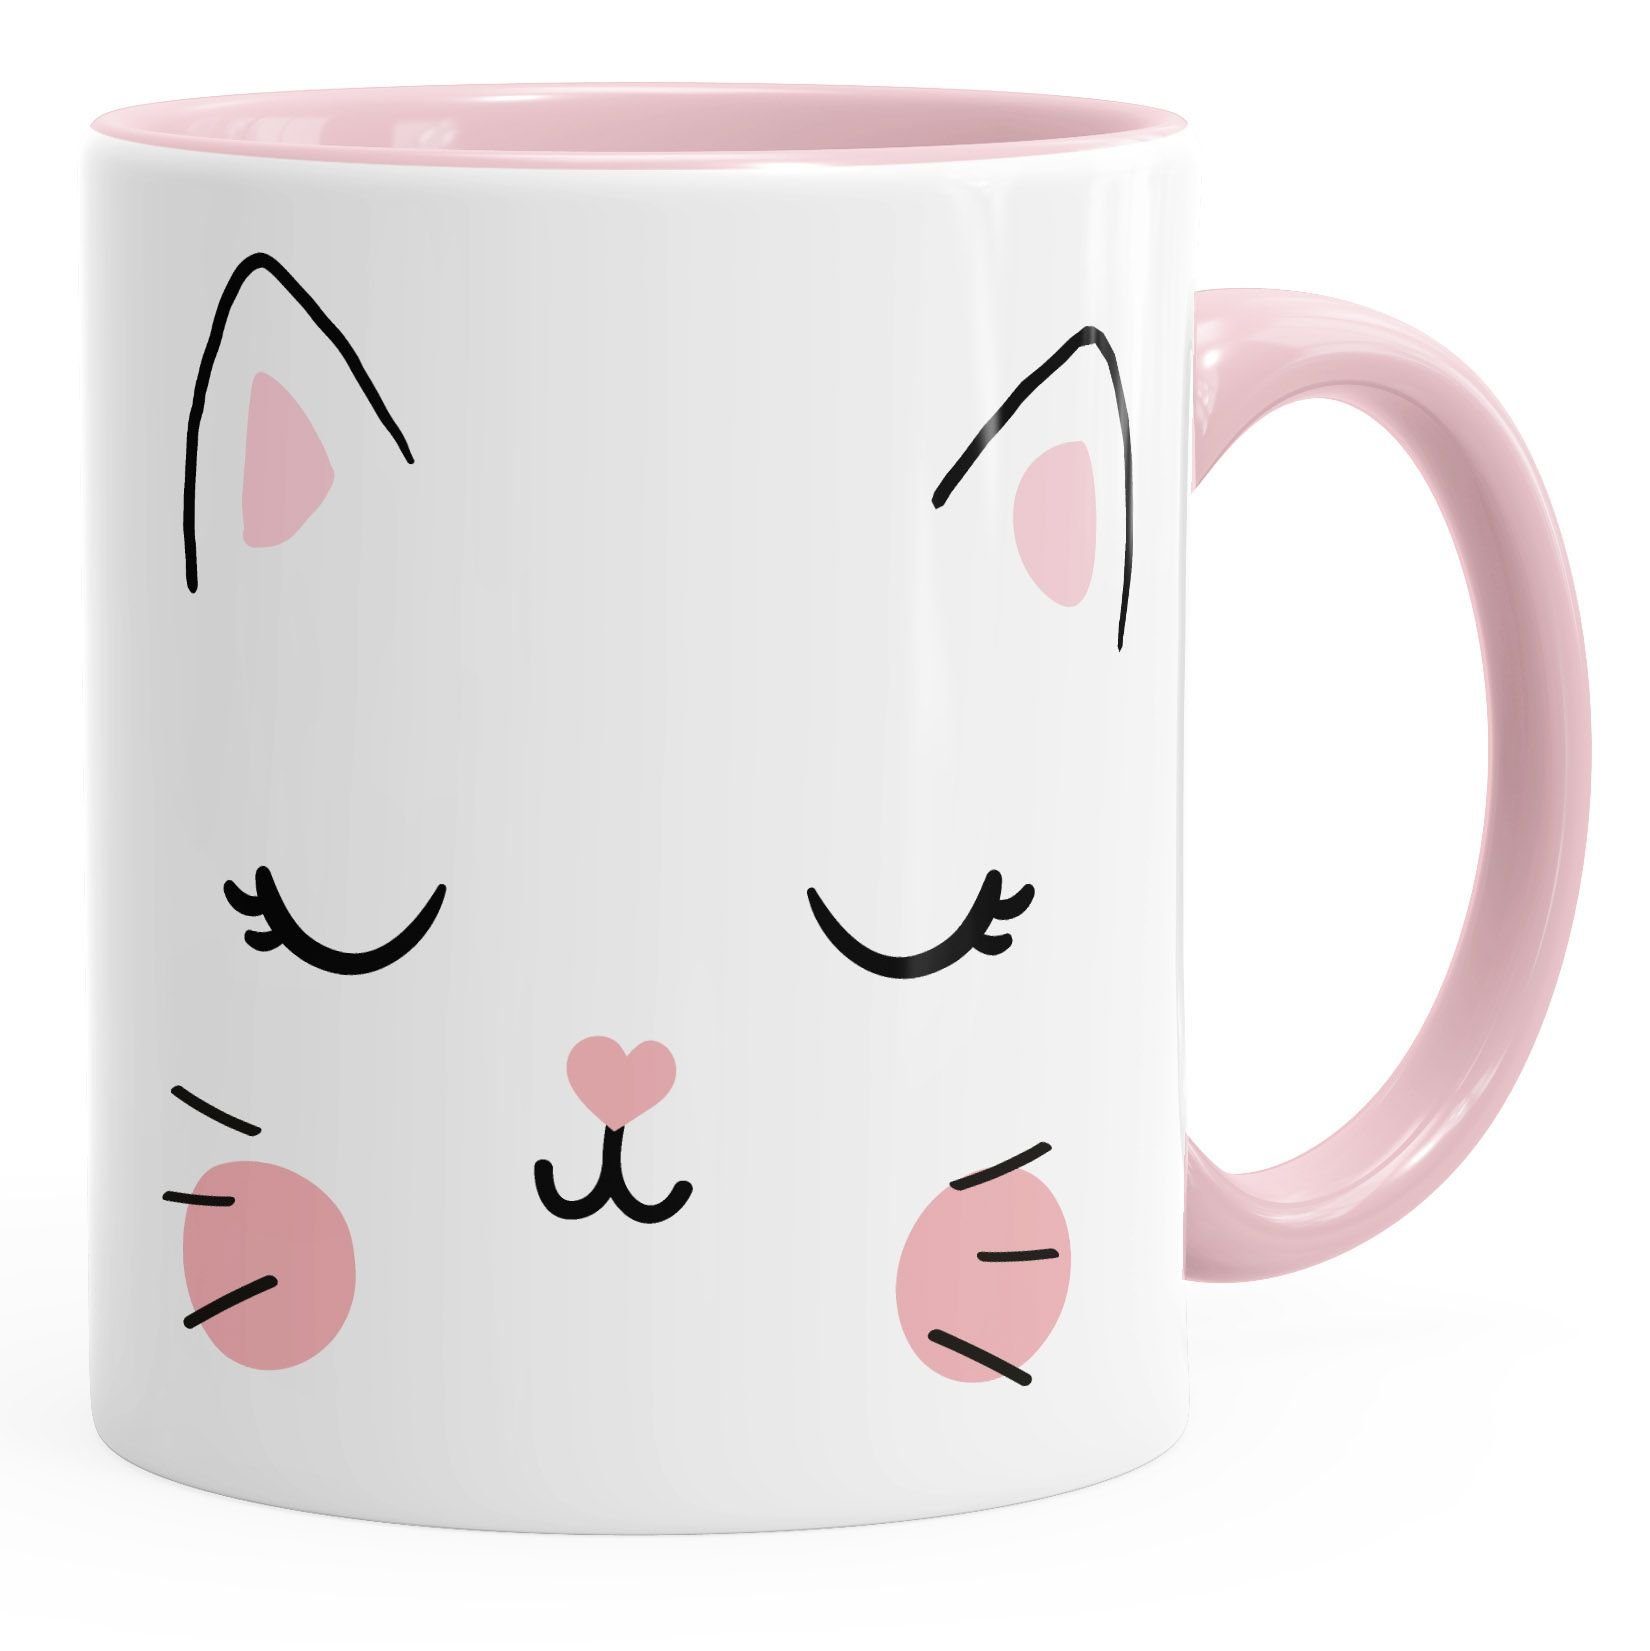 MoonWorks Tasse Kaffee-Tasse Katze Katzengesicht Cat Teetasse Keramiktasse MoonWorks®, Keramik